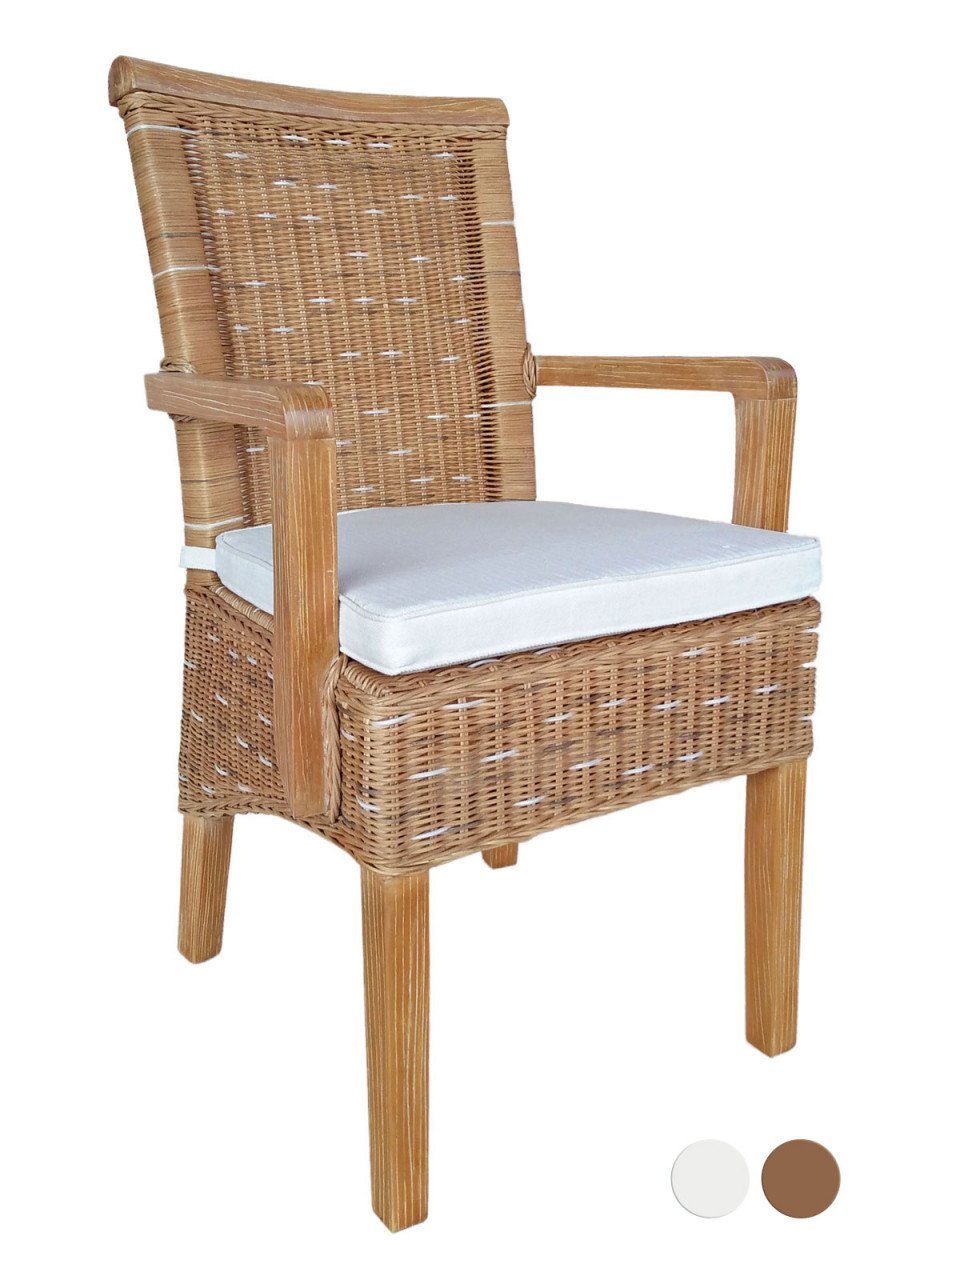 Esszimmer-Stuhl Rattanstuhl Armlehnen Sessel weiß mit Sitzmöbel Soma Stuhl Sitzplatz Sessel oder braun m, Perth soma